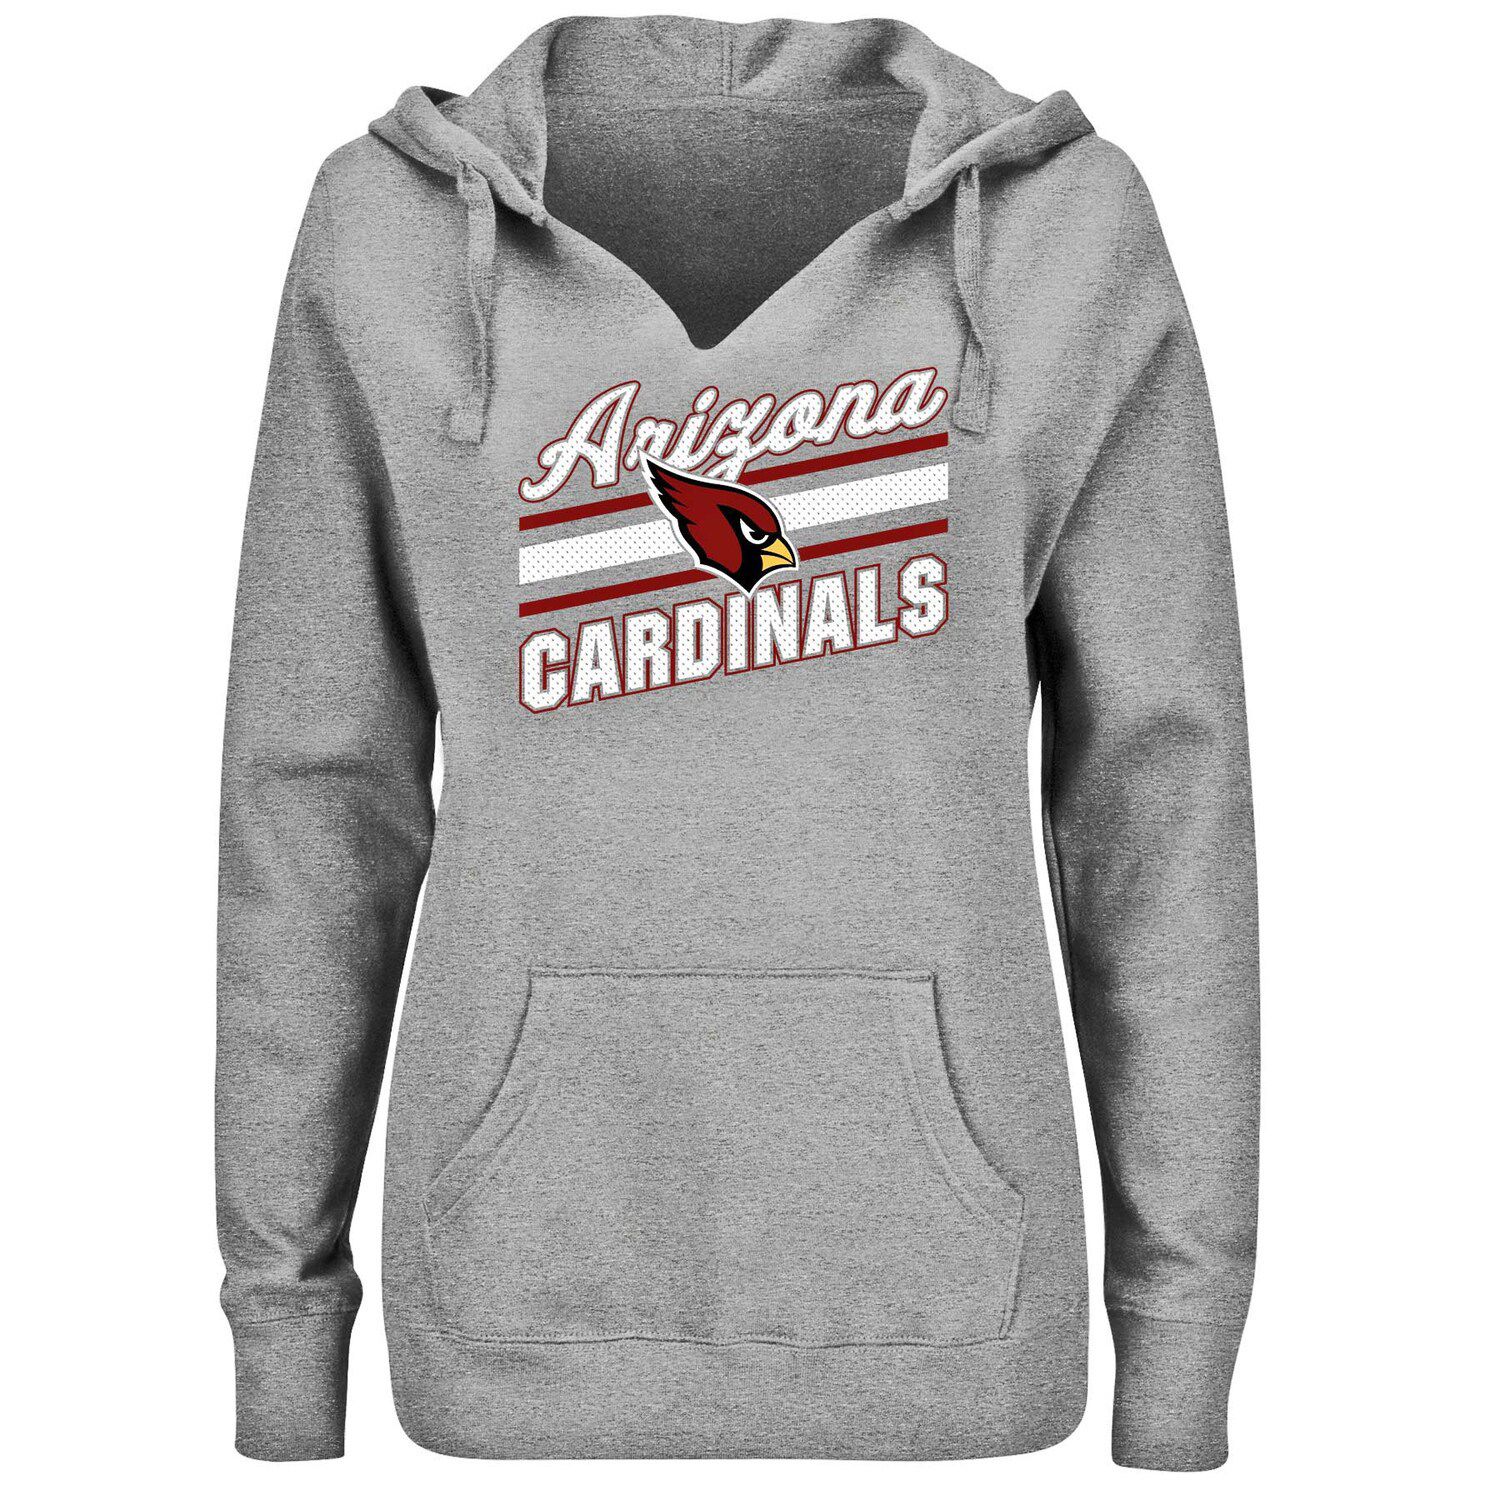 arizona cardinals football shirts